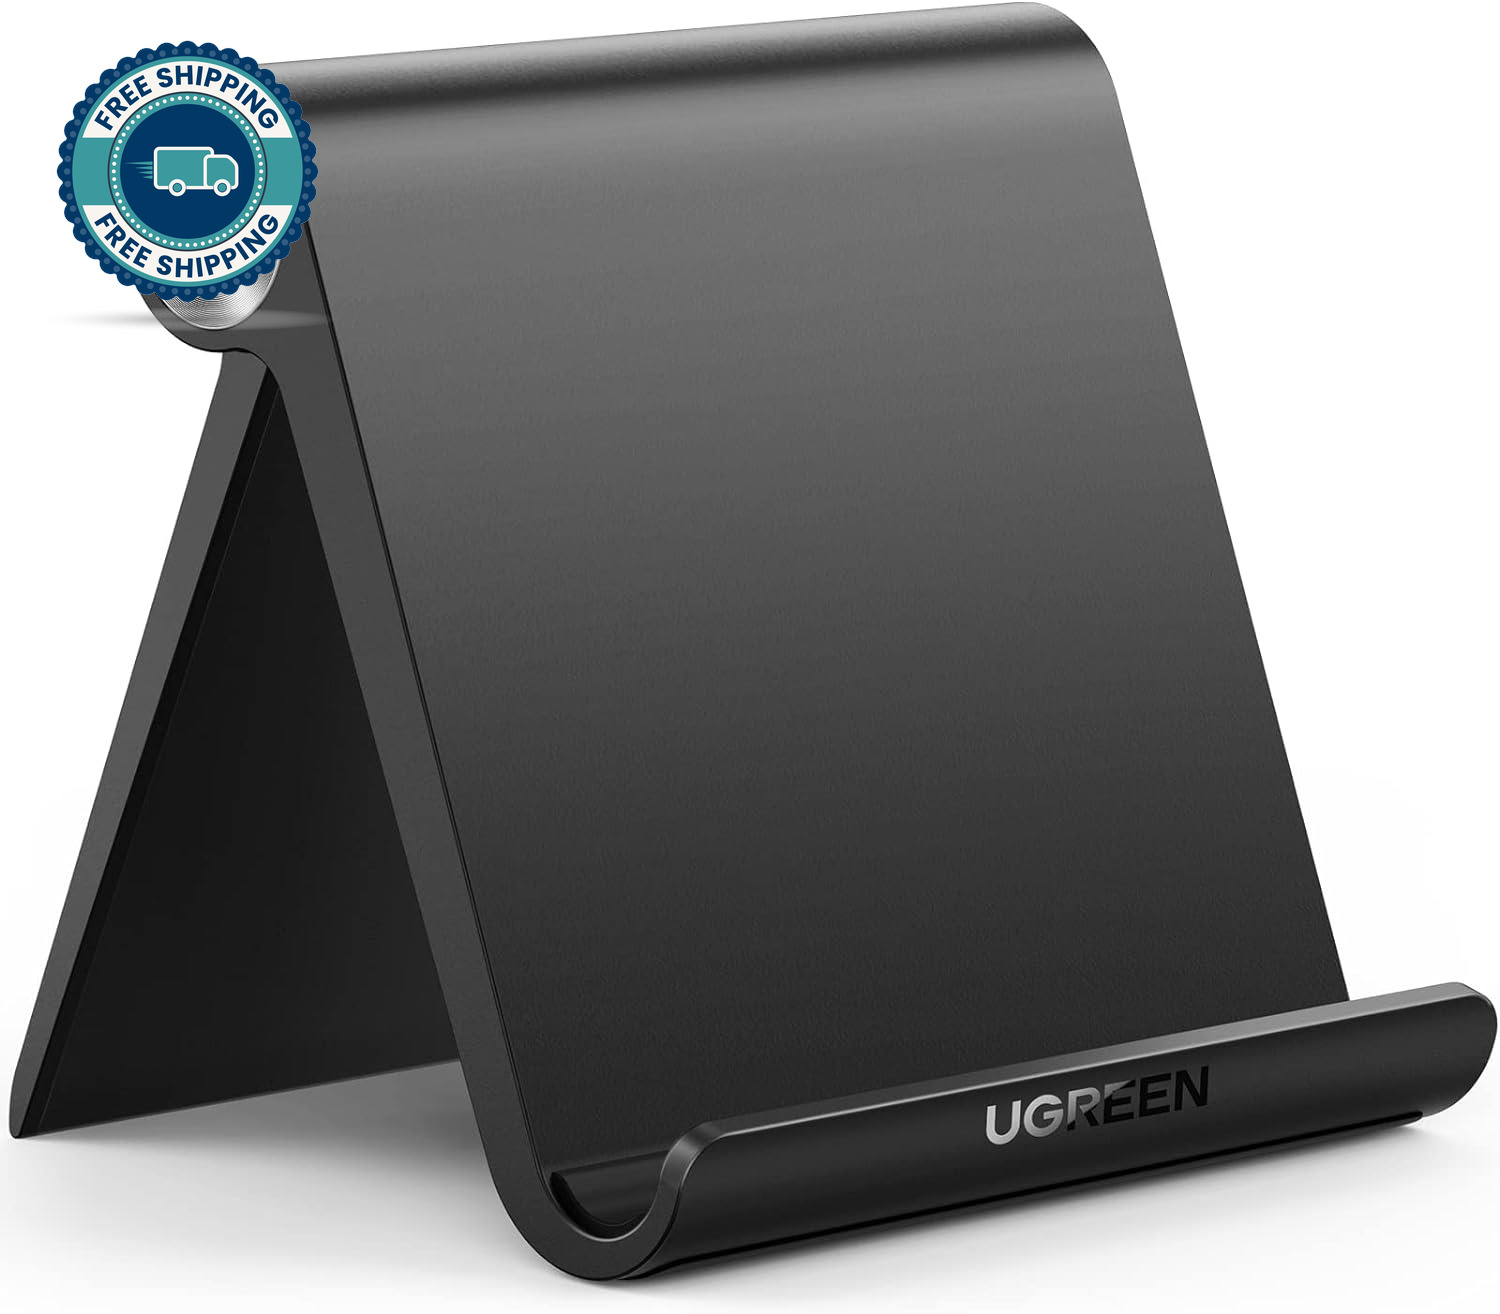 UGREEN Universal Tablet Stand - Adjustable & Portable Desktop Holder